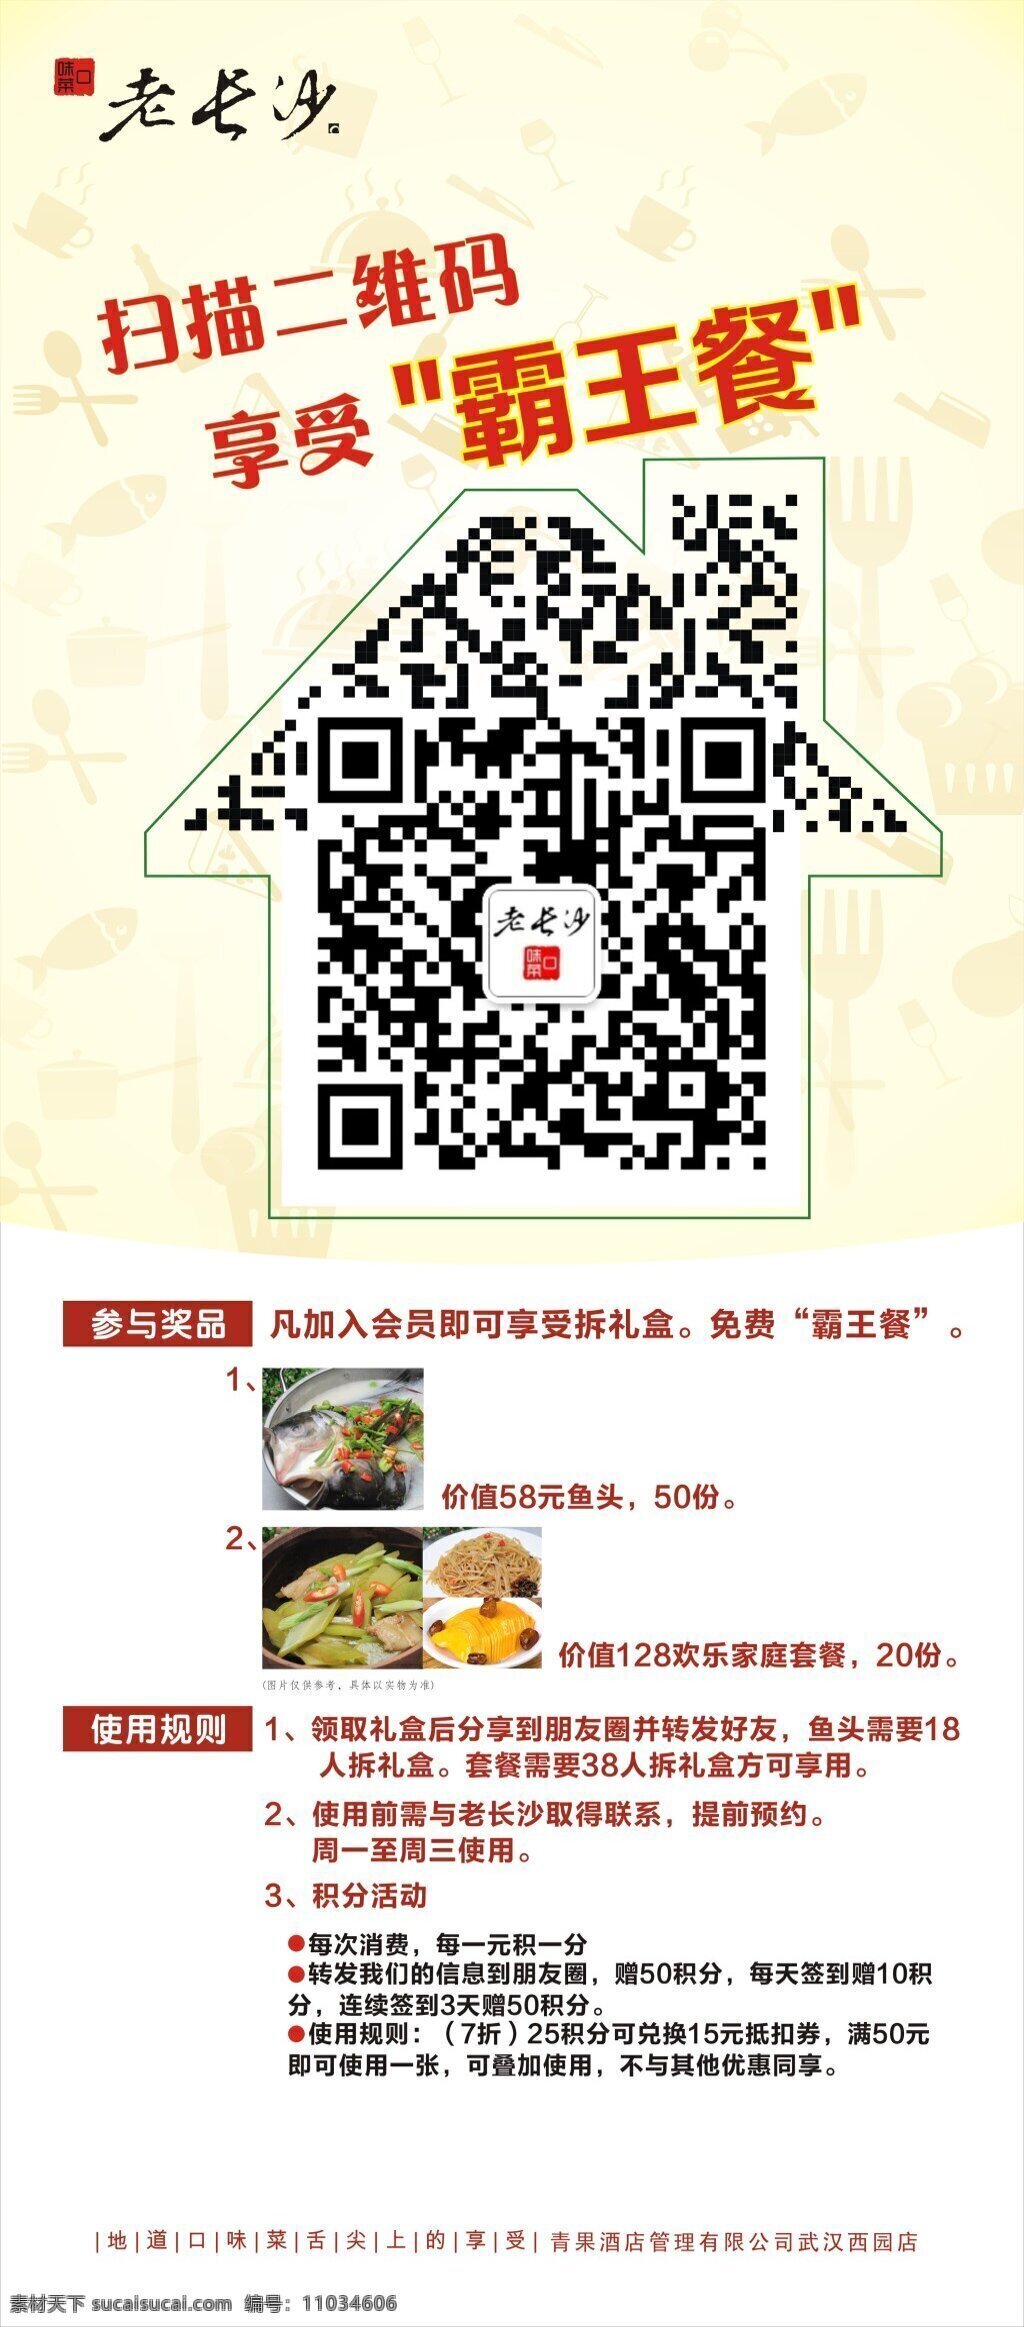 中餐厅 扫描 二维码 享 免费 美食 房子 造型 中餐 活动 享免费美食 白色